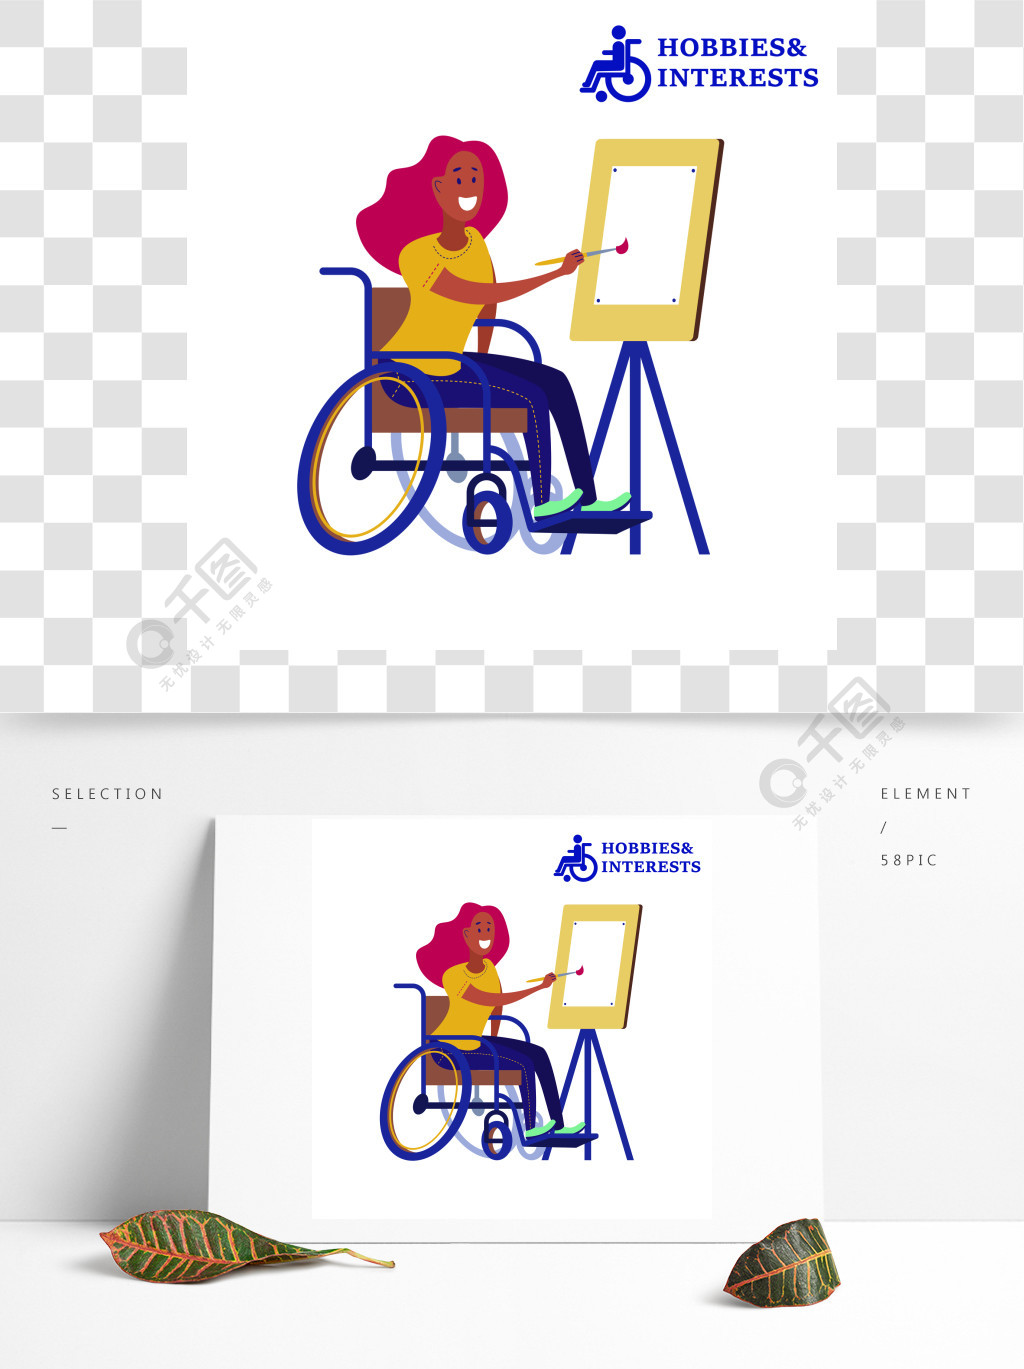 一个坐在轮椅上的年轻女子在画架上画画残疾人士的爱好和兴趣向量例证